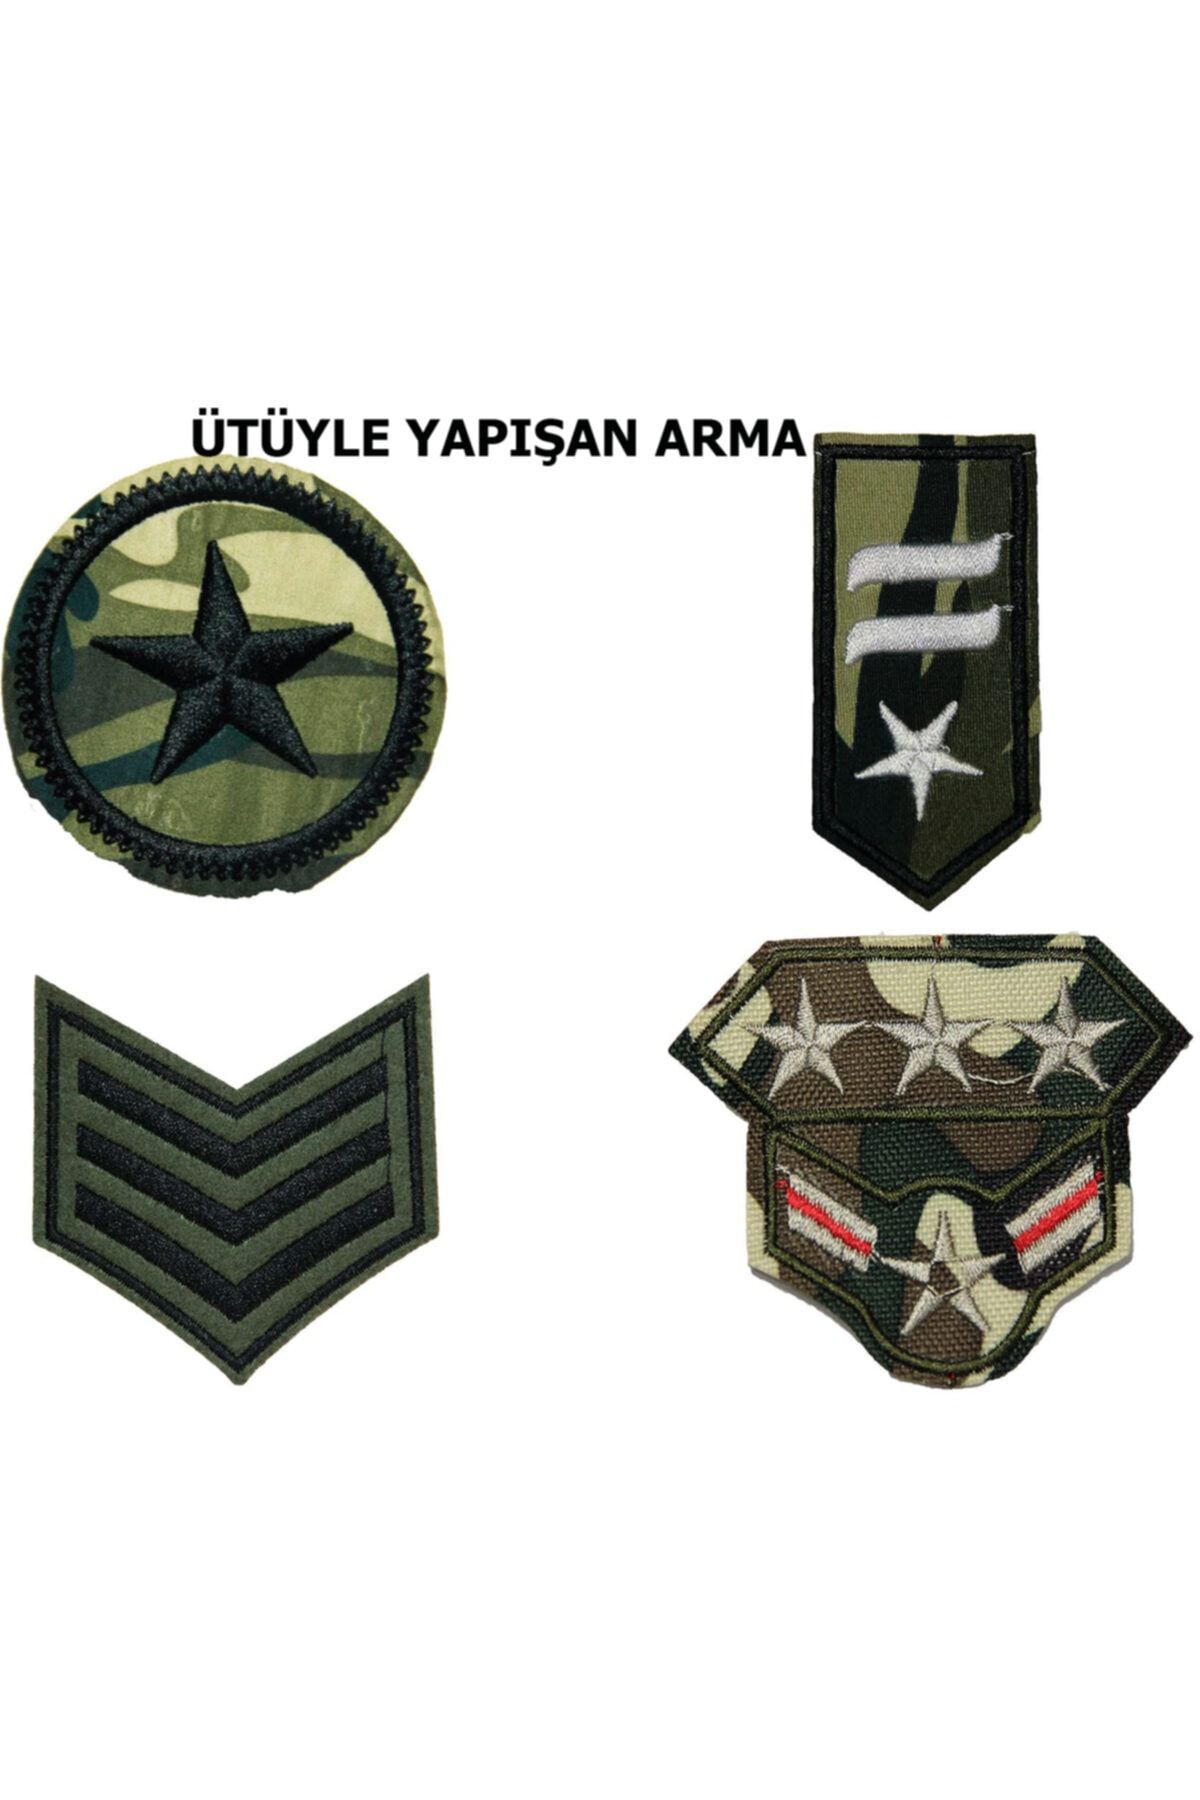 HALFART Askeri Seri 3 Arma Patch Yama Sticker